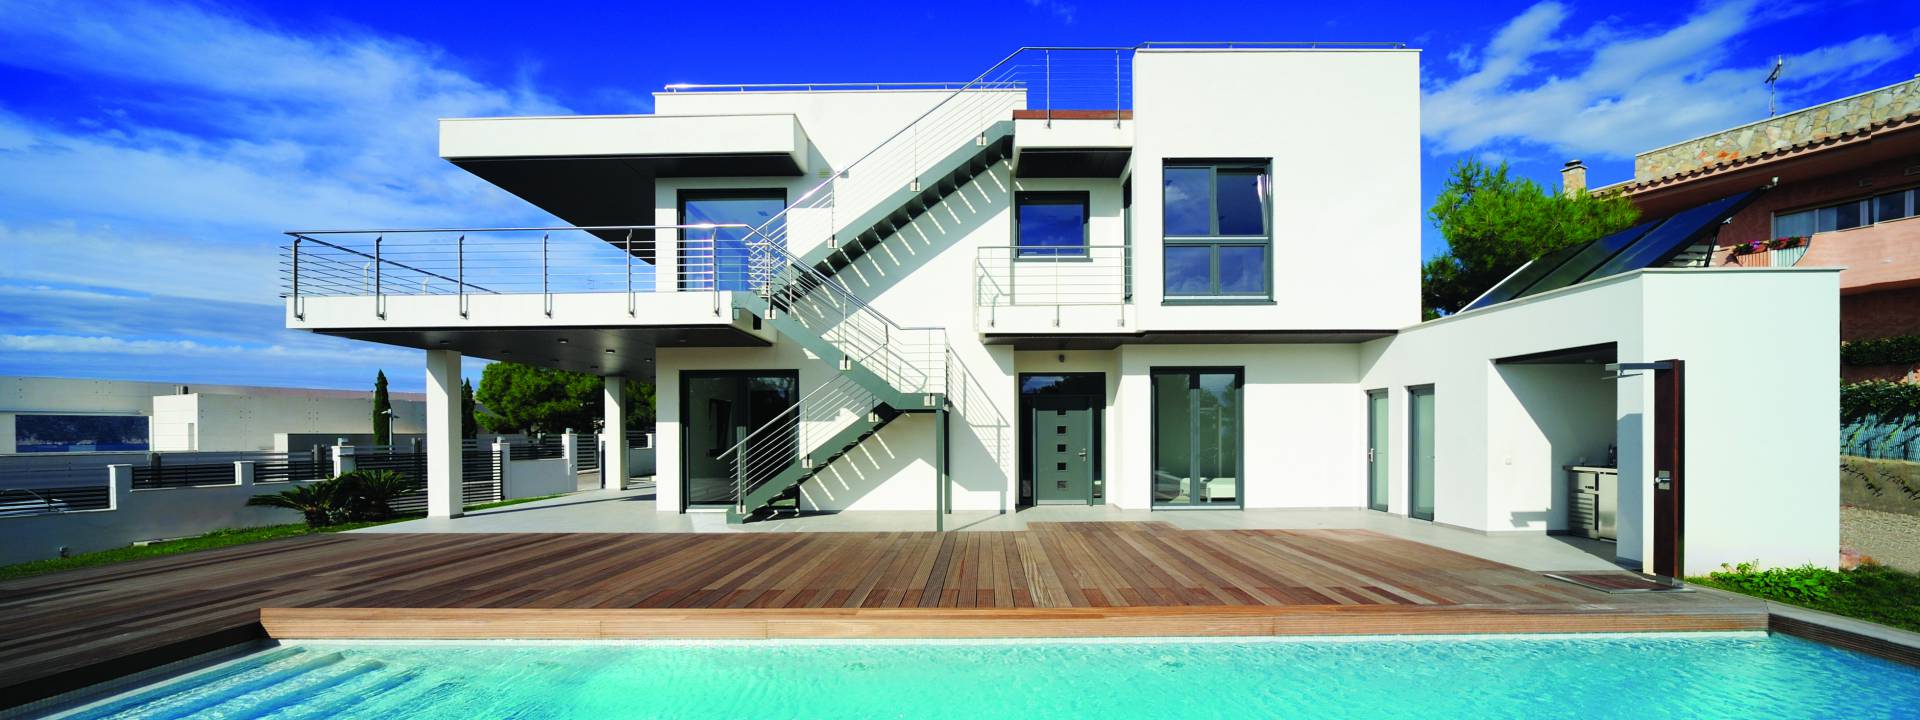 Luxury Minimalist viilla.  Contemporary exterior. Exquisite swimming pool.